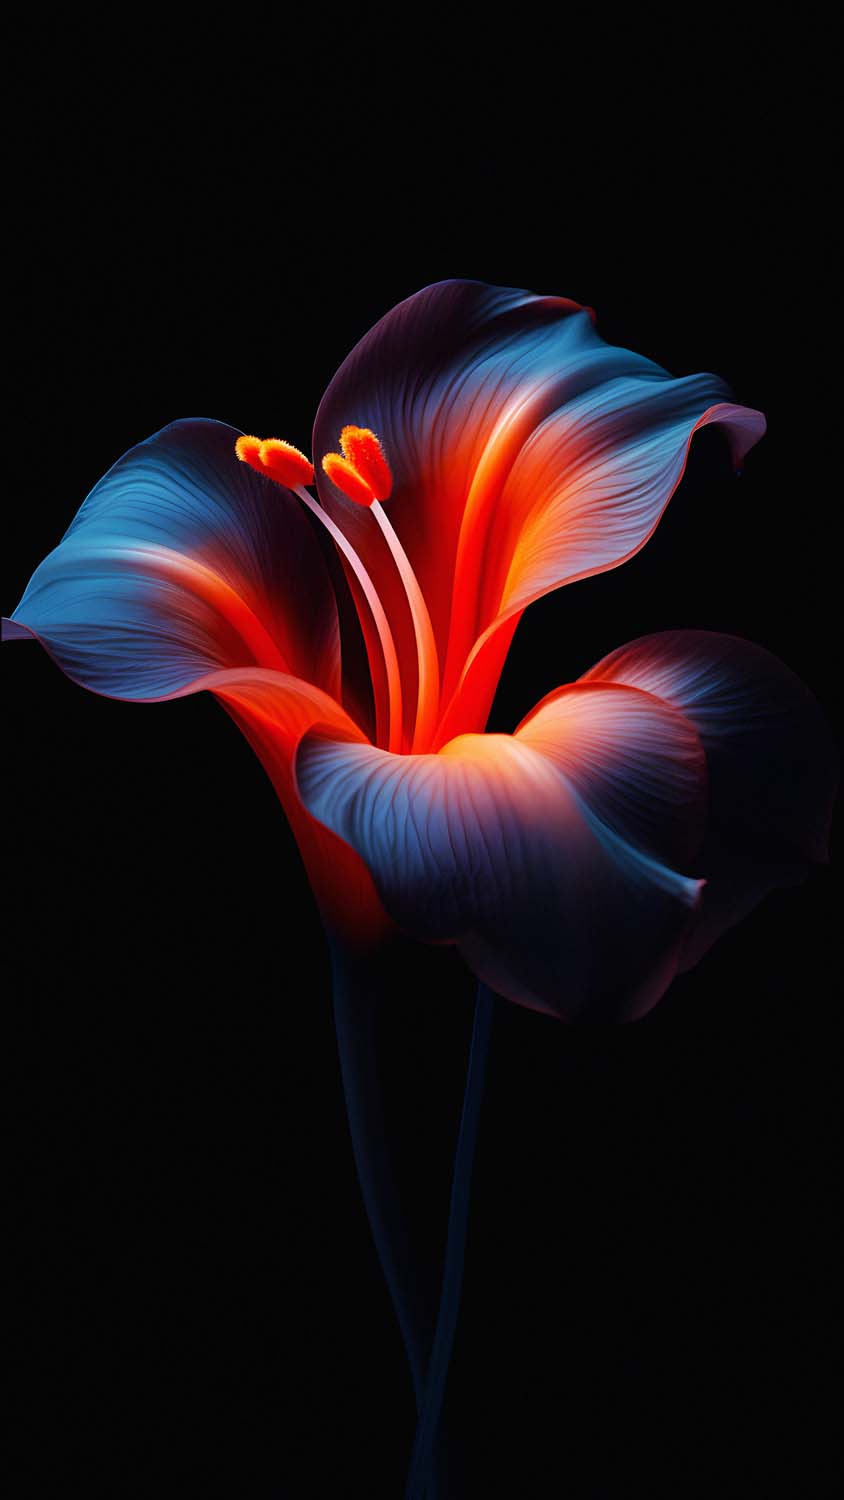 OLED Dark Flower iPhone Wallpaper 4K